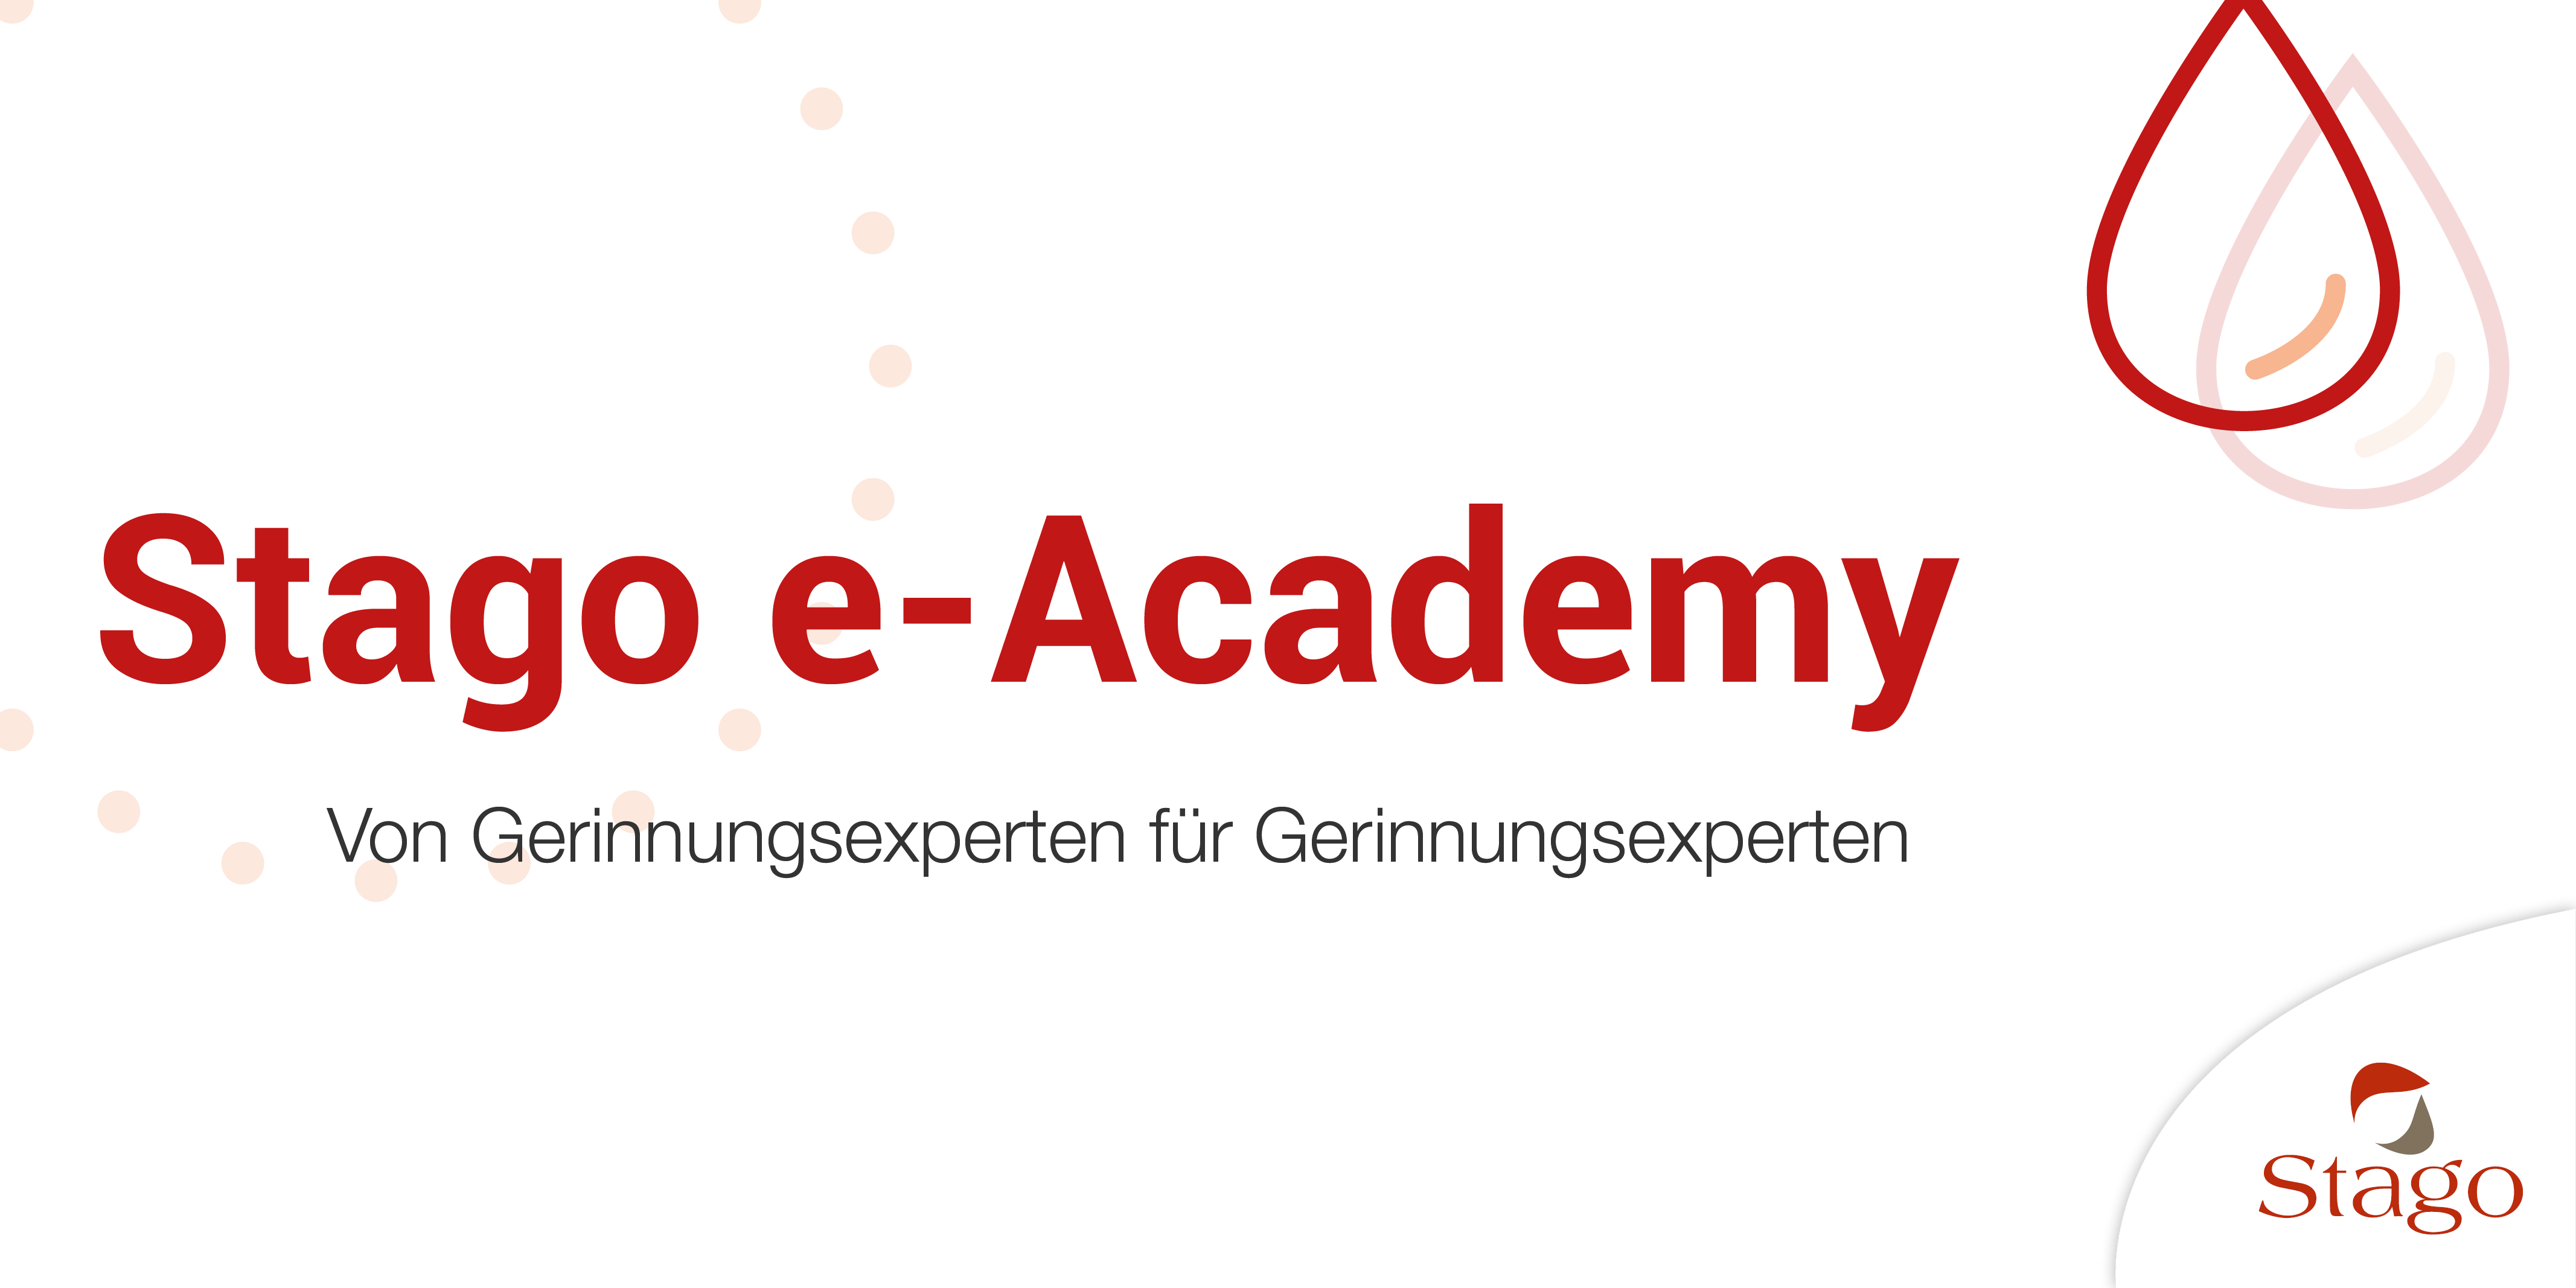 Stago e-Academy